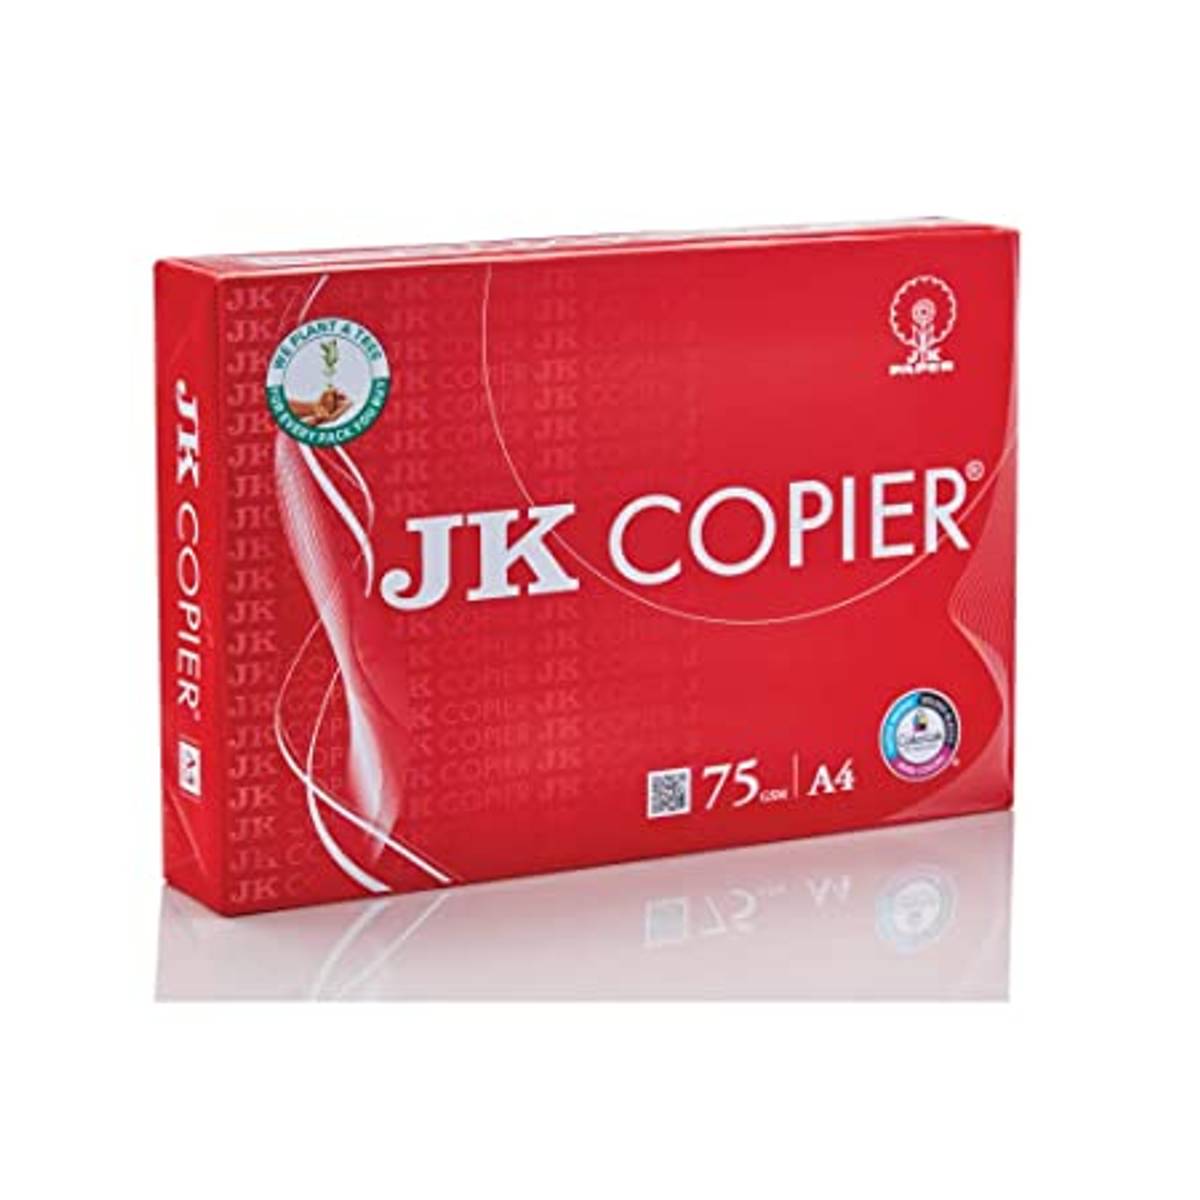 JK COPIER 75GSM  A4  1 BOX